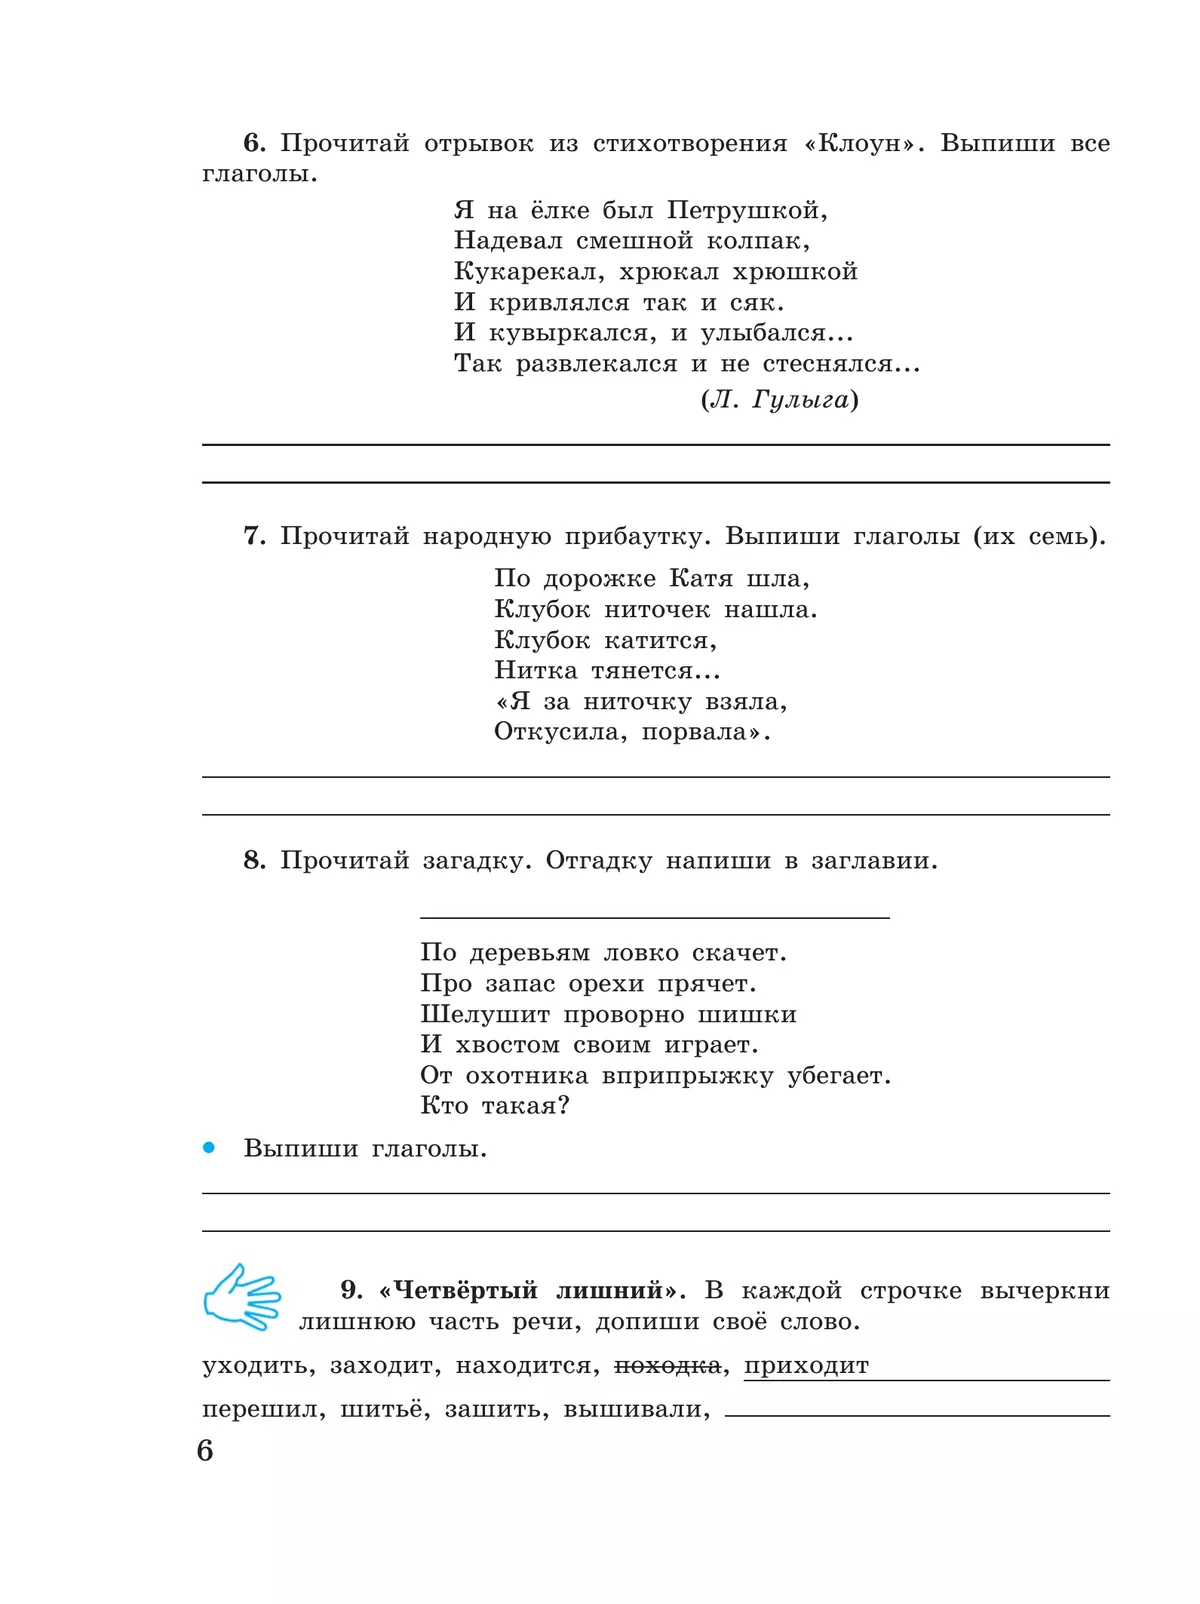 Русский язык. Глагол. 5-9 классы. Рабочая тетрадь 4 (для обучающихся с интеллектуальными нарушениями) 5